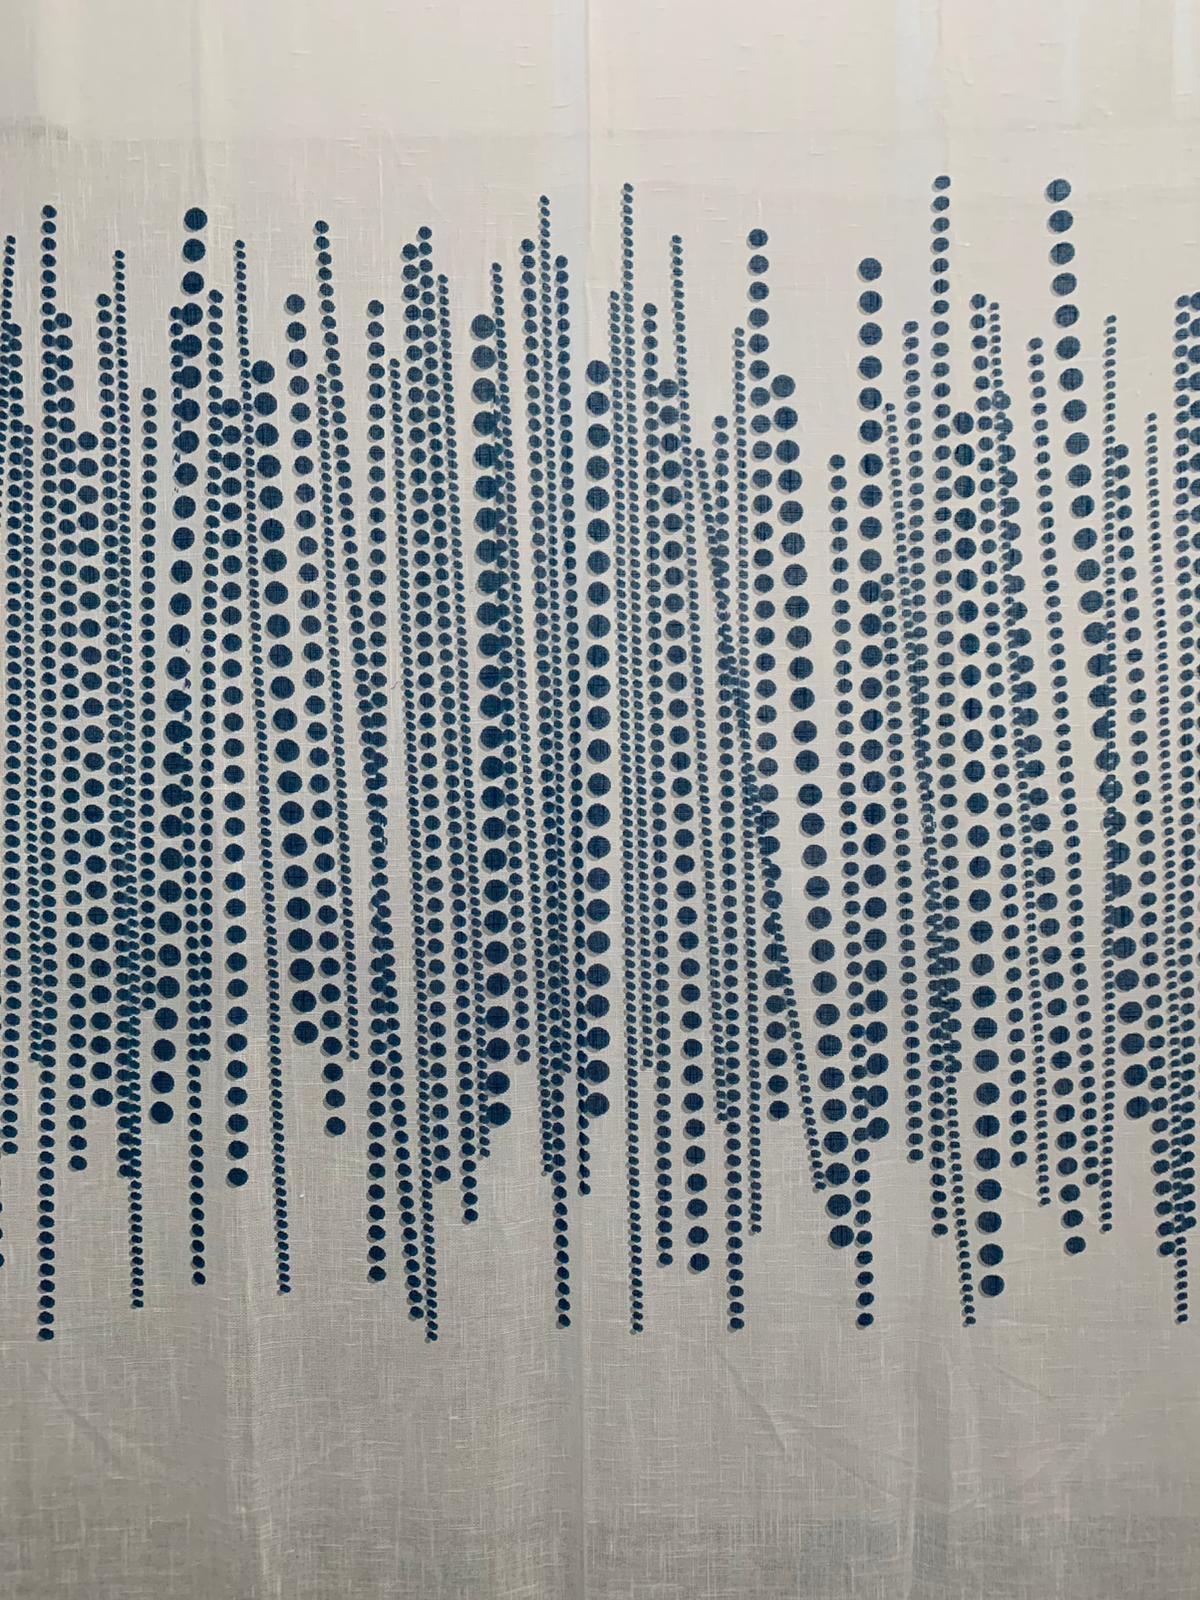 Italian Fabric Divider by Silvio Coppola for Tessitura Di Mompiano, 1970s For Sale